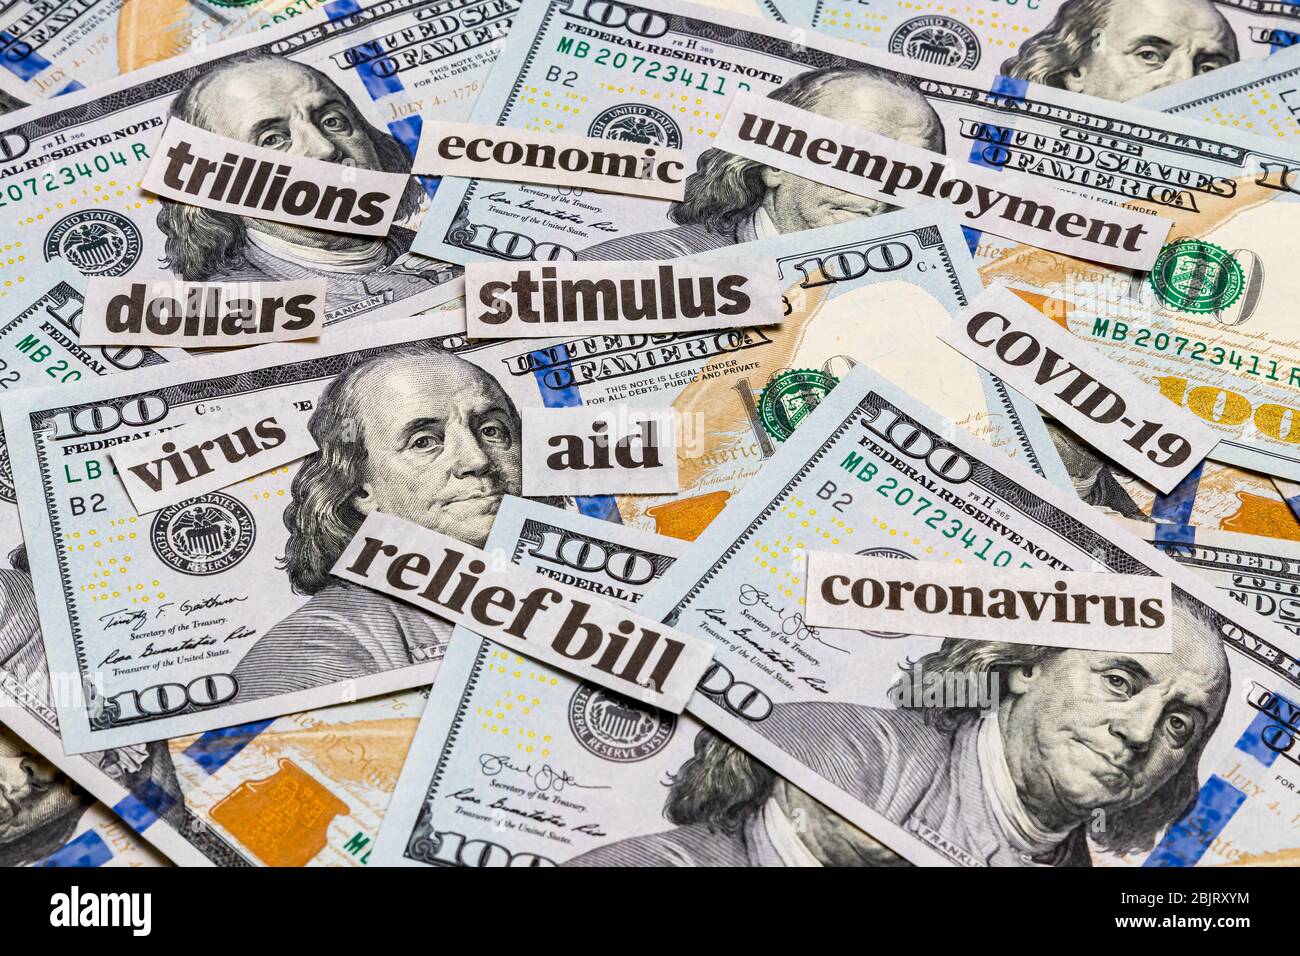 Covid-19 Coronavirus Stimulus Relief Zeitung Schlagzeilen, 100 Dollar-Rechnungen. Konzept der finanziellen Not, der wirtschaftlichen Auswirkungen der Zahlung und Rezession Stockfoto